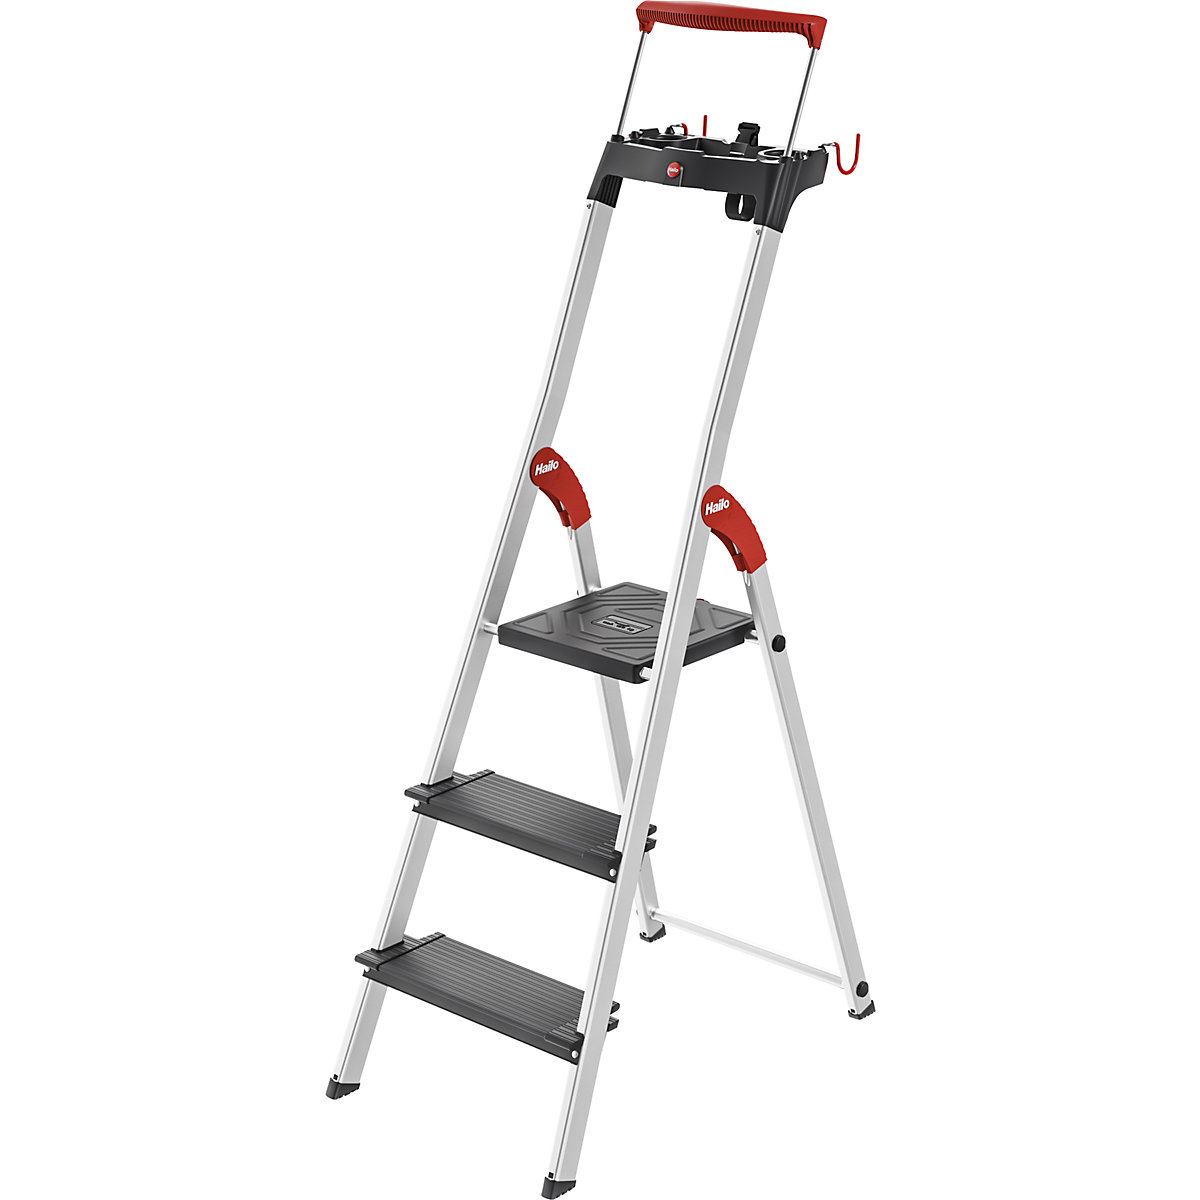 TopLine L100 safety ladder – Hailo